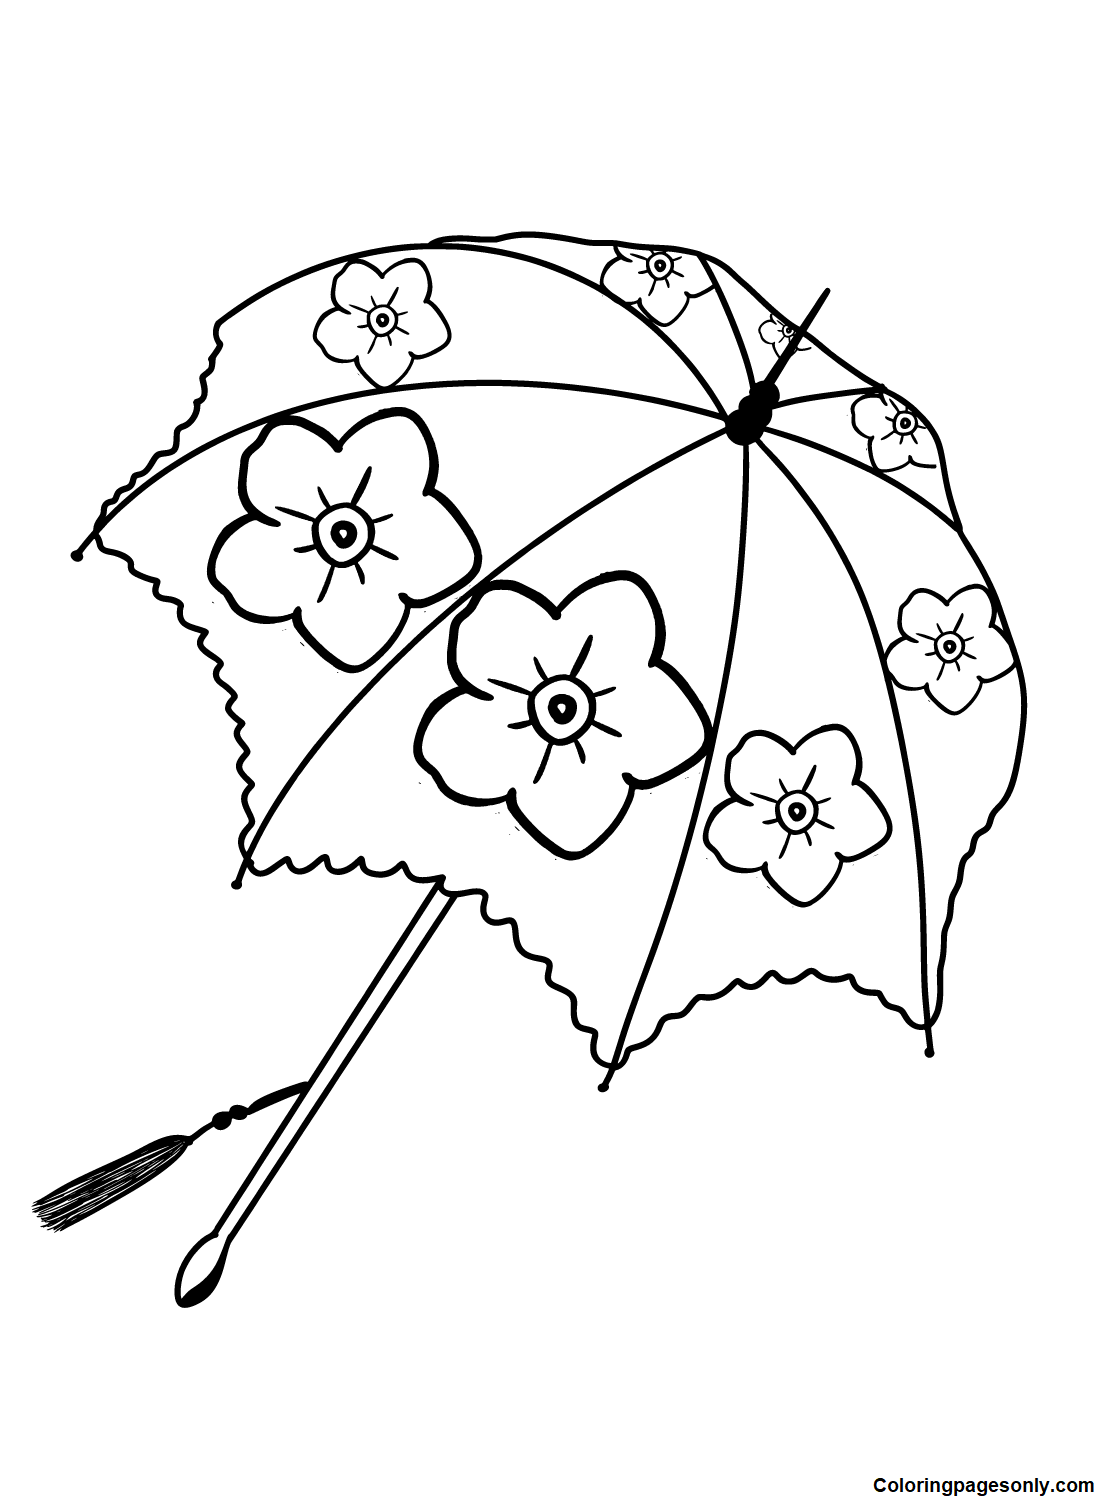 Umbrella 提供免费雨伞